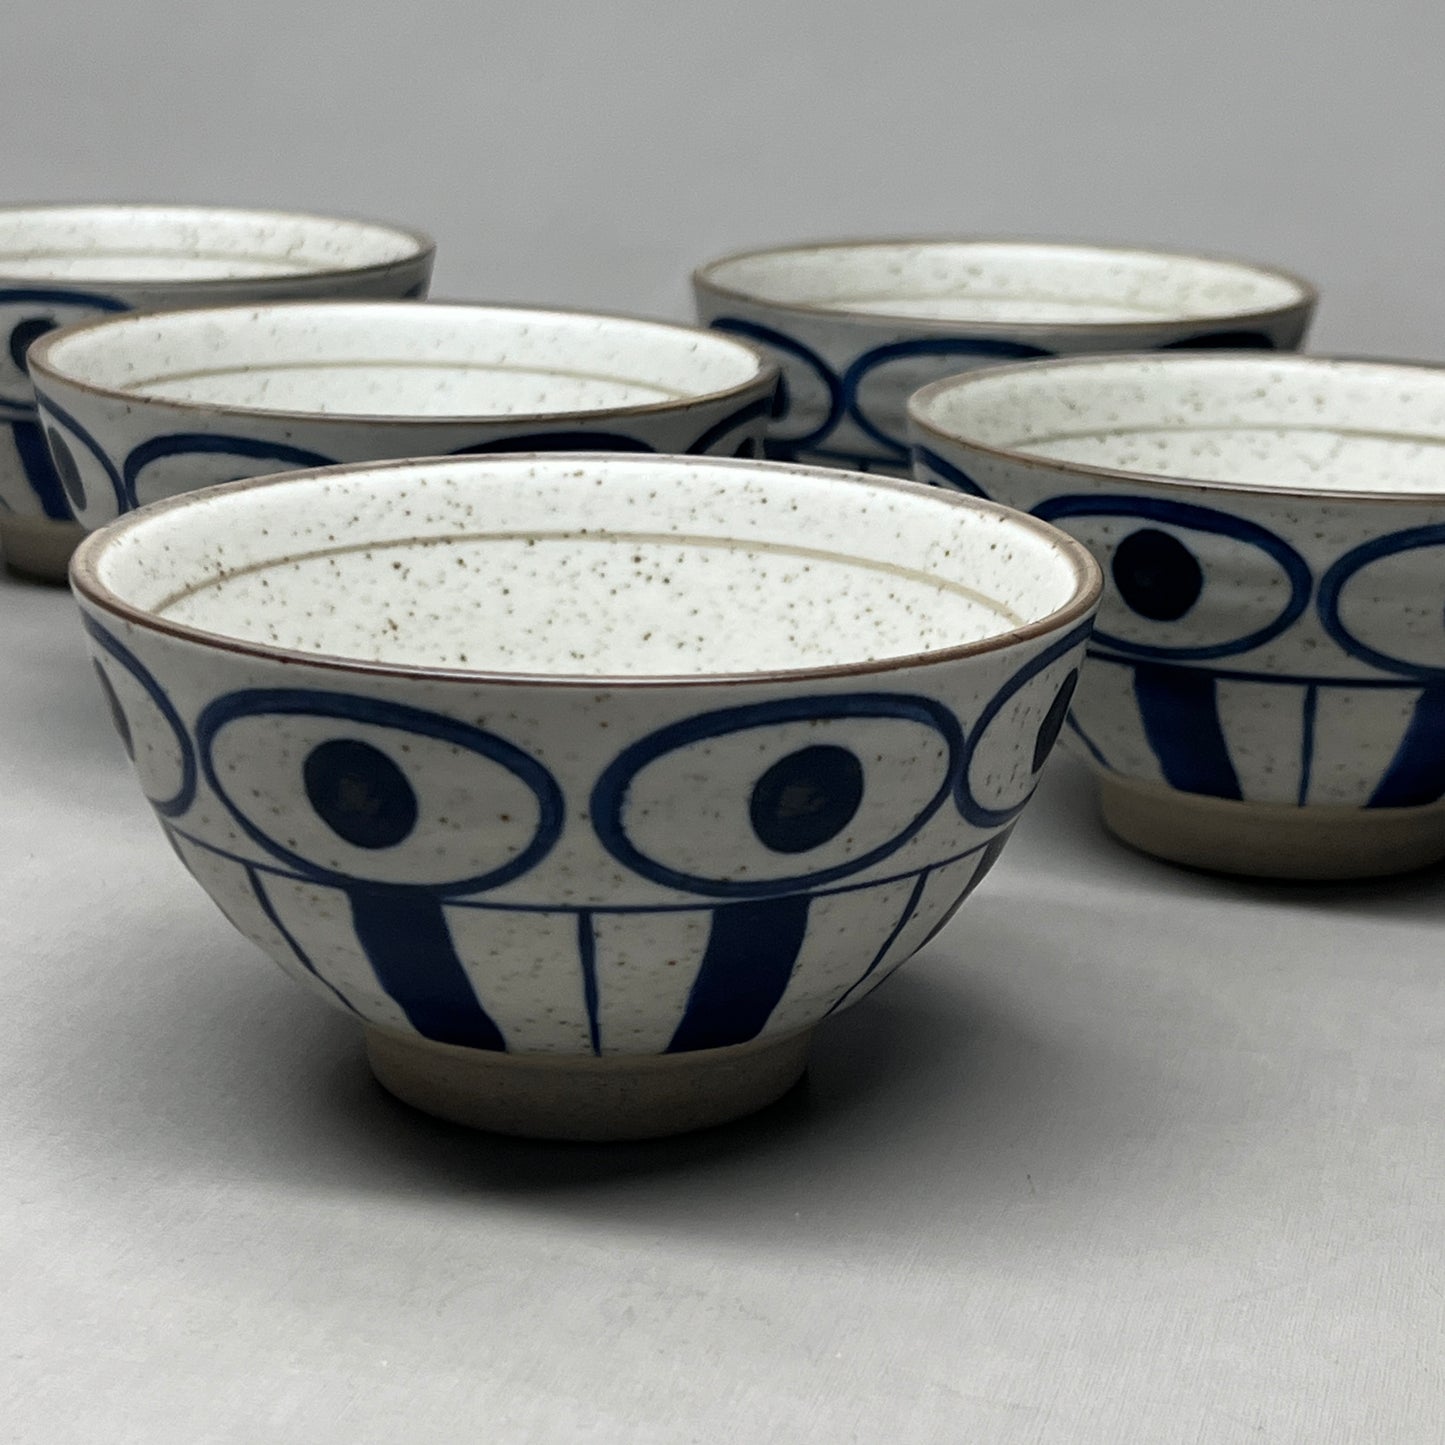 DANICA HEIRLOOM 6-PACK! Ceramic Elements Bowl Nomad 4.75" Blue Design L113005 (New)